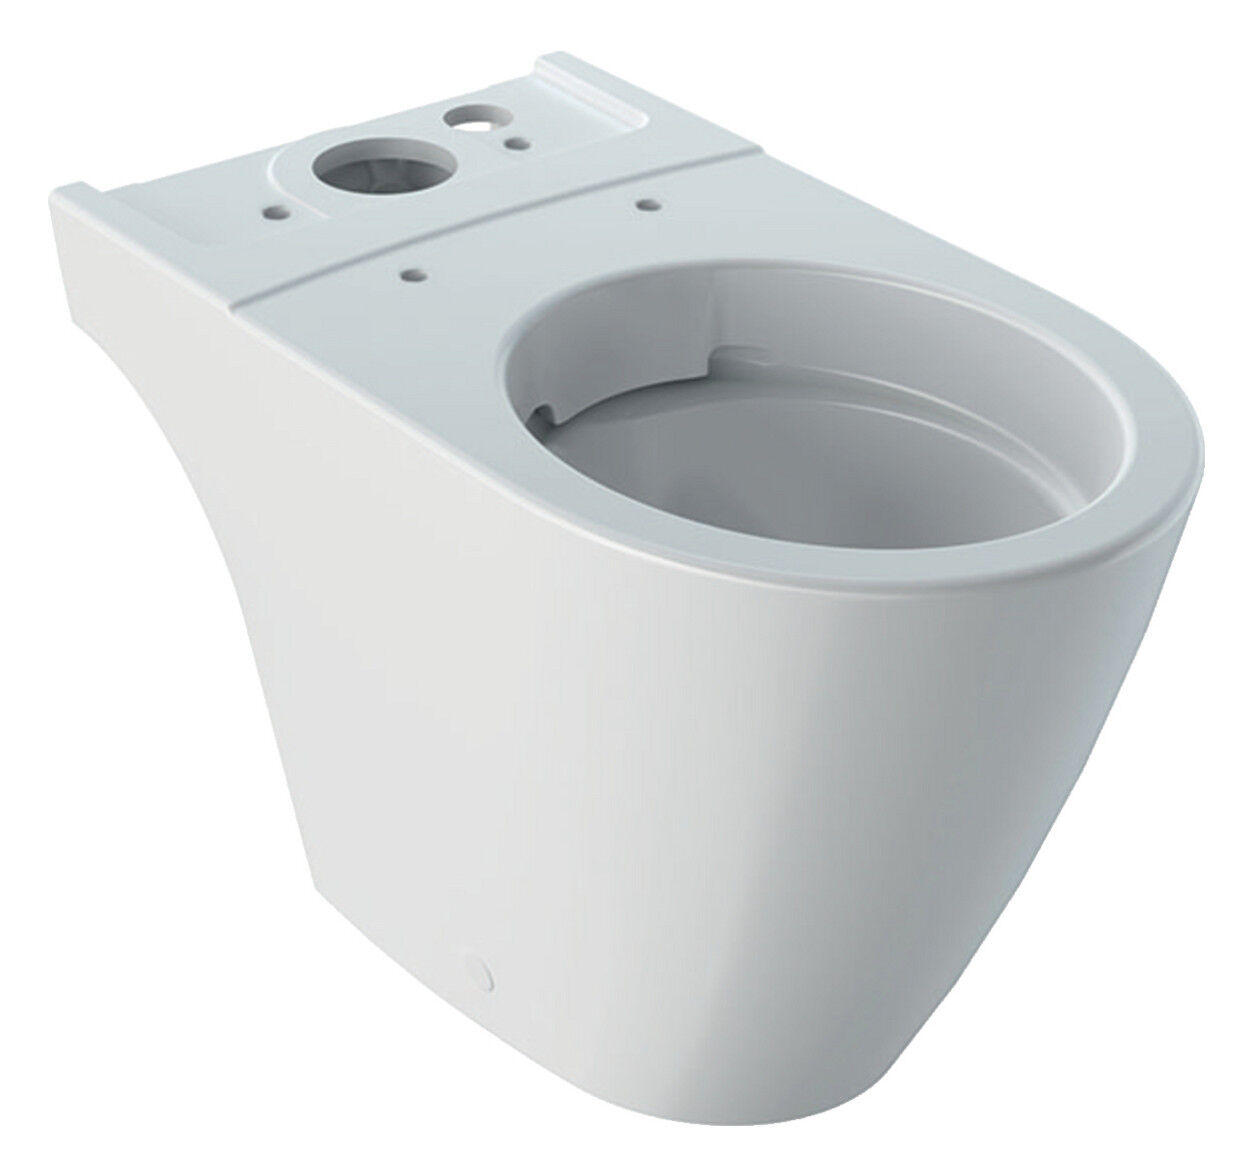 Geberit ICON Tiefspül-WC für Spülkasten, Weiß | BadeDu | Armaturen